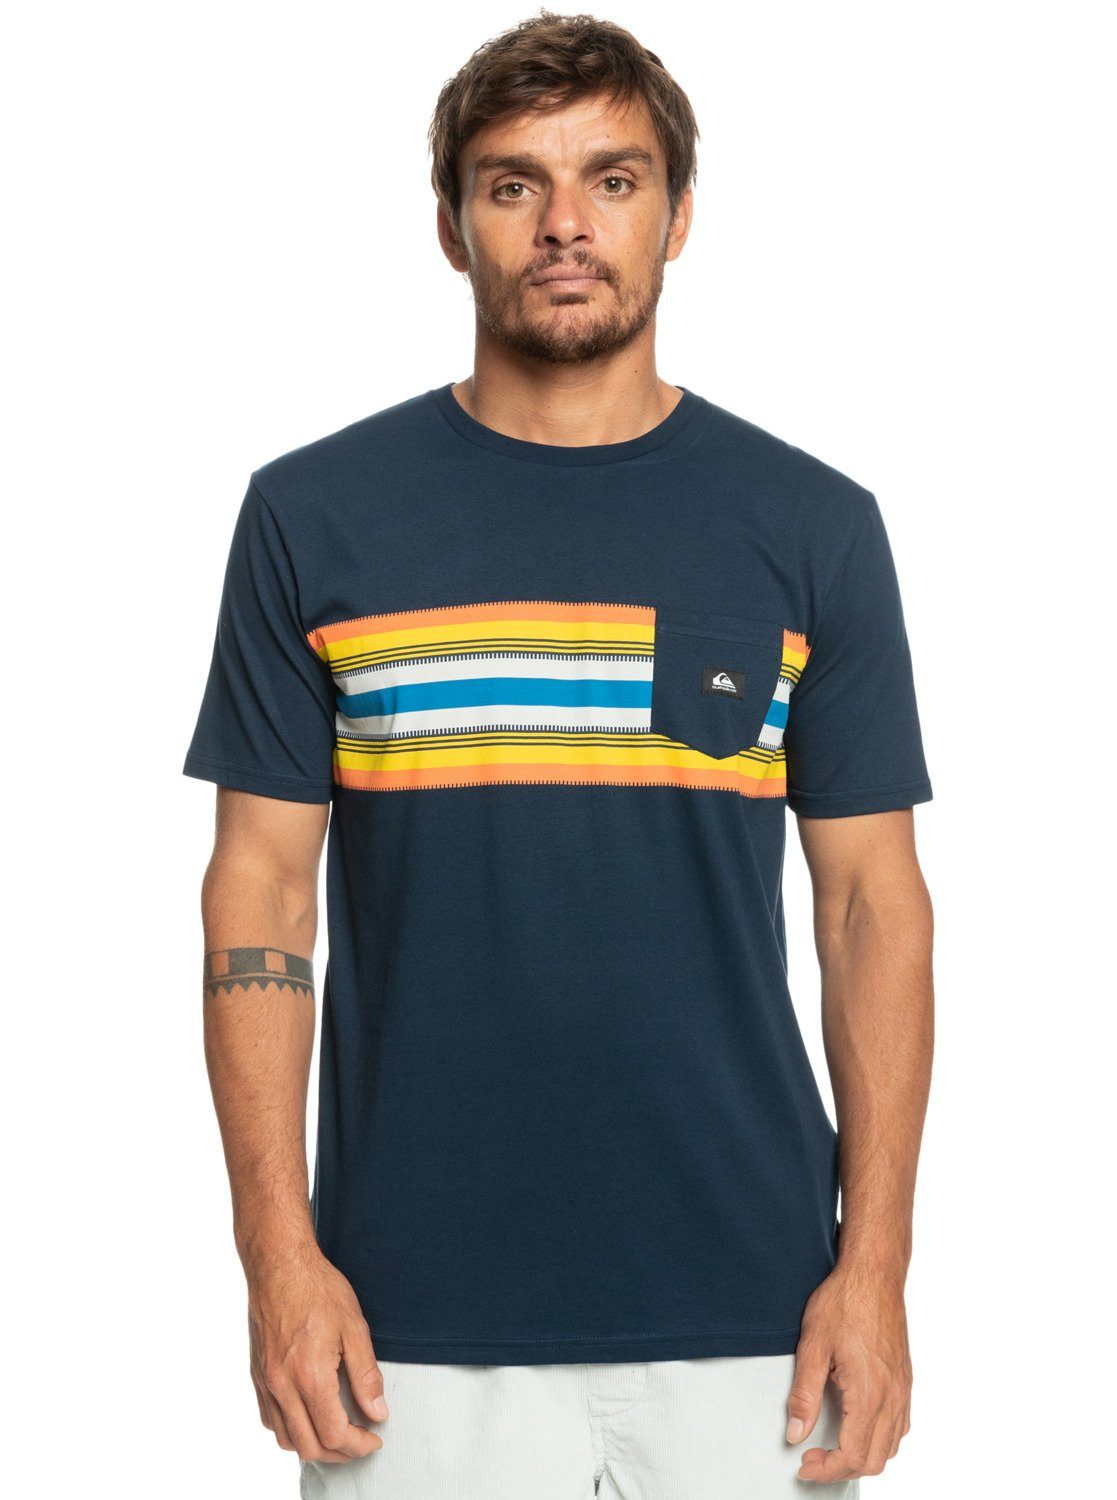 T-Shirt Blazer Stripe Quiksilver Surfadelica Navy